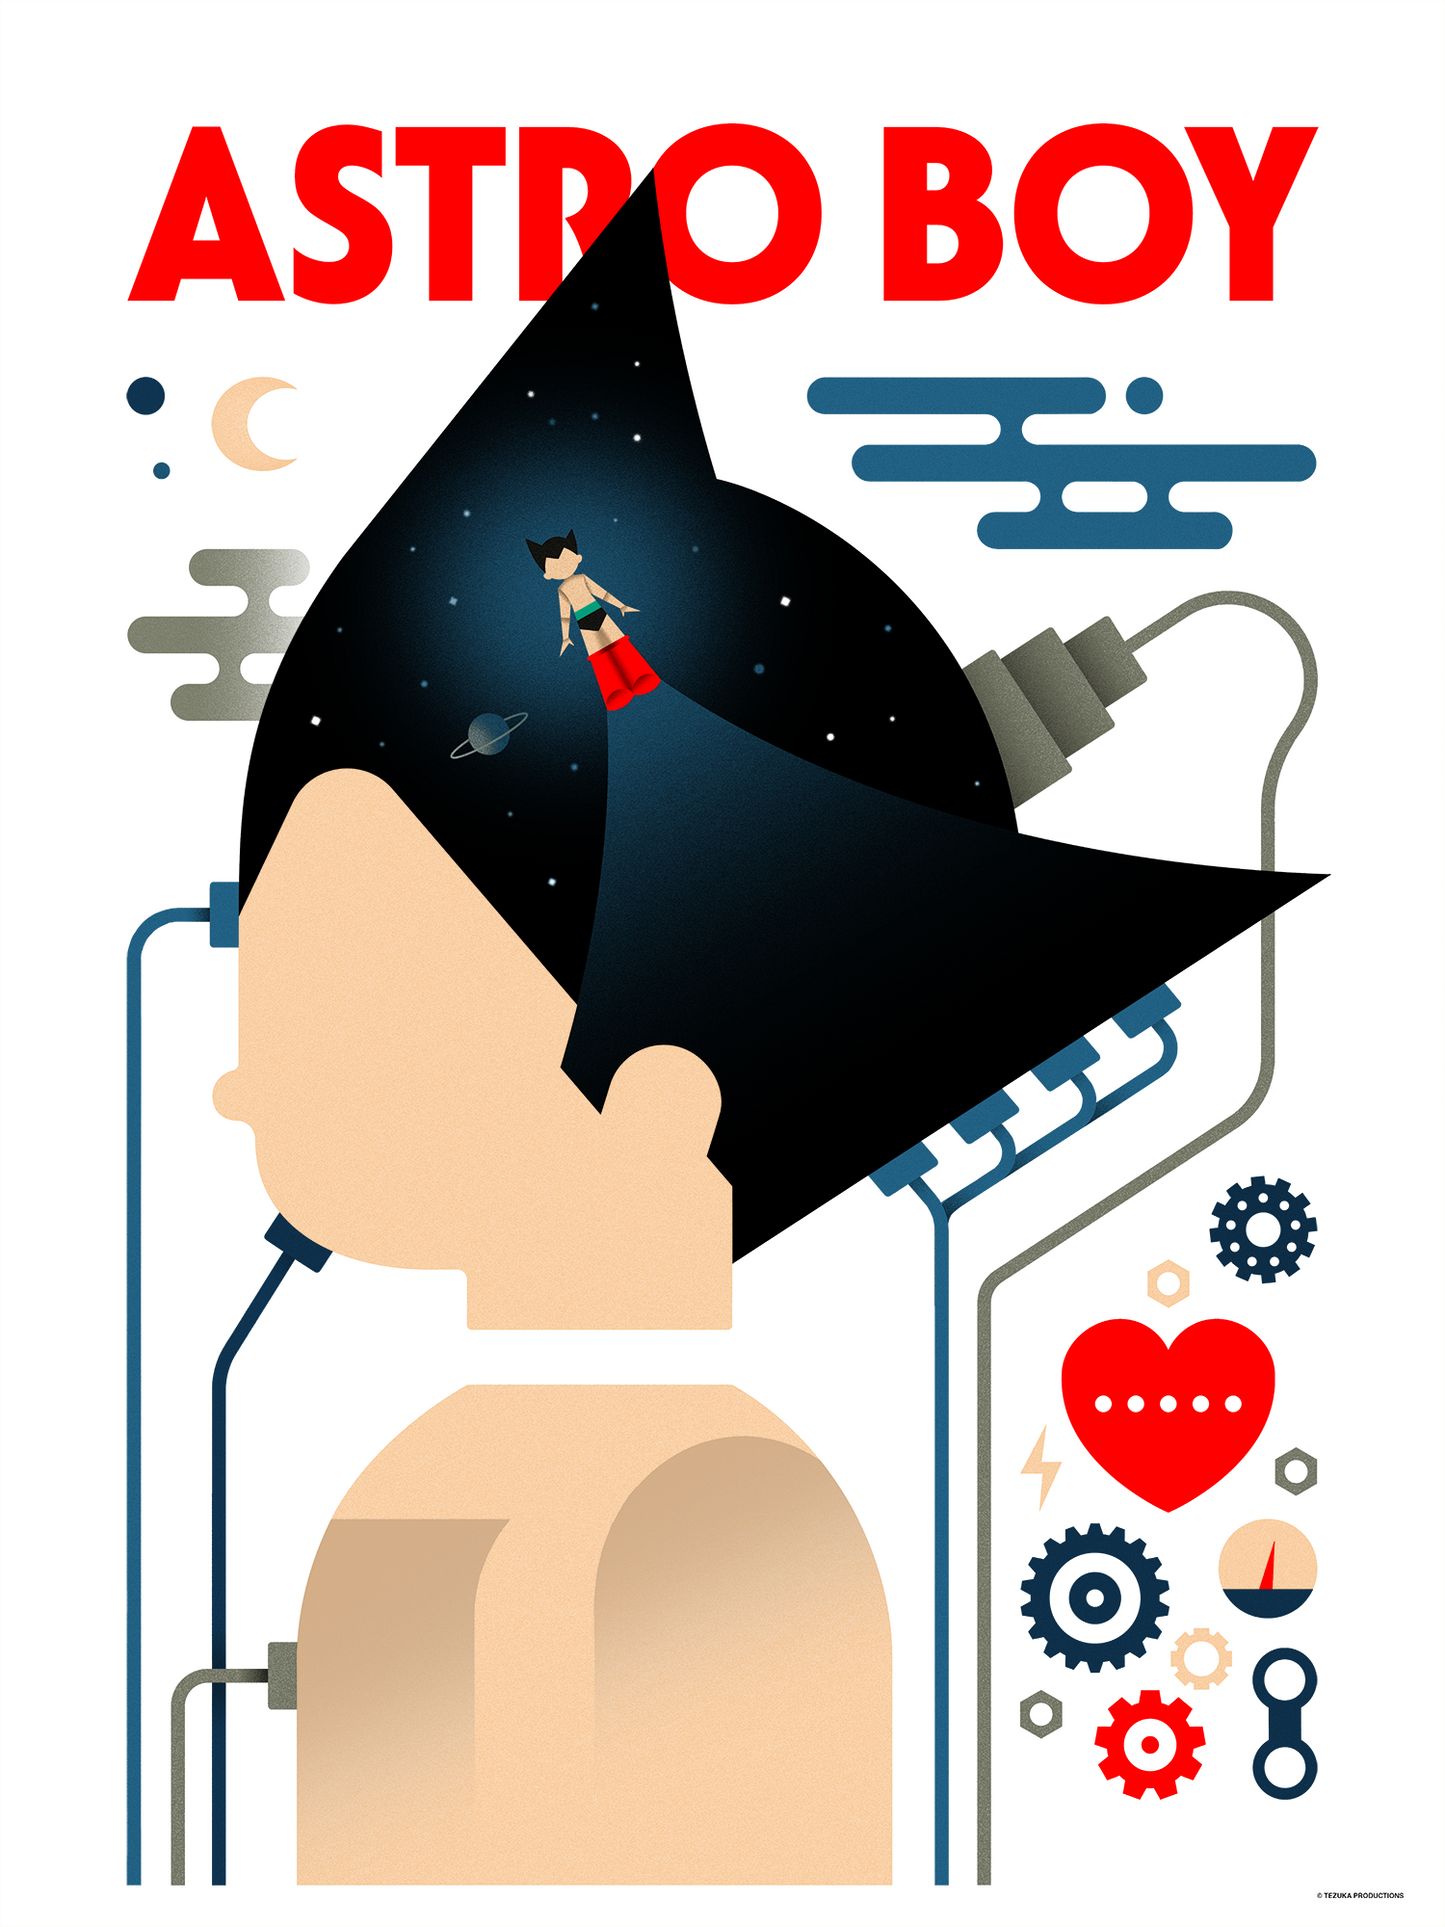 Michael De Pippo "Astro Boy"